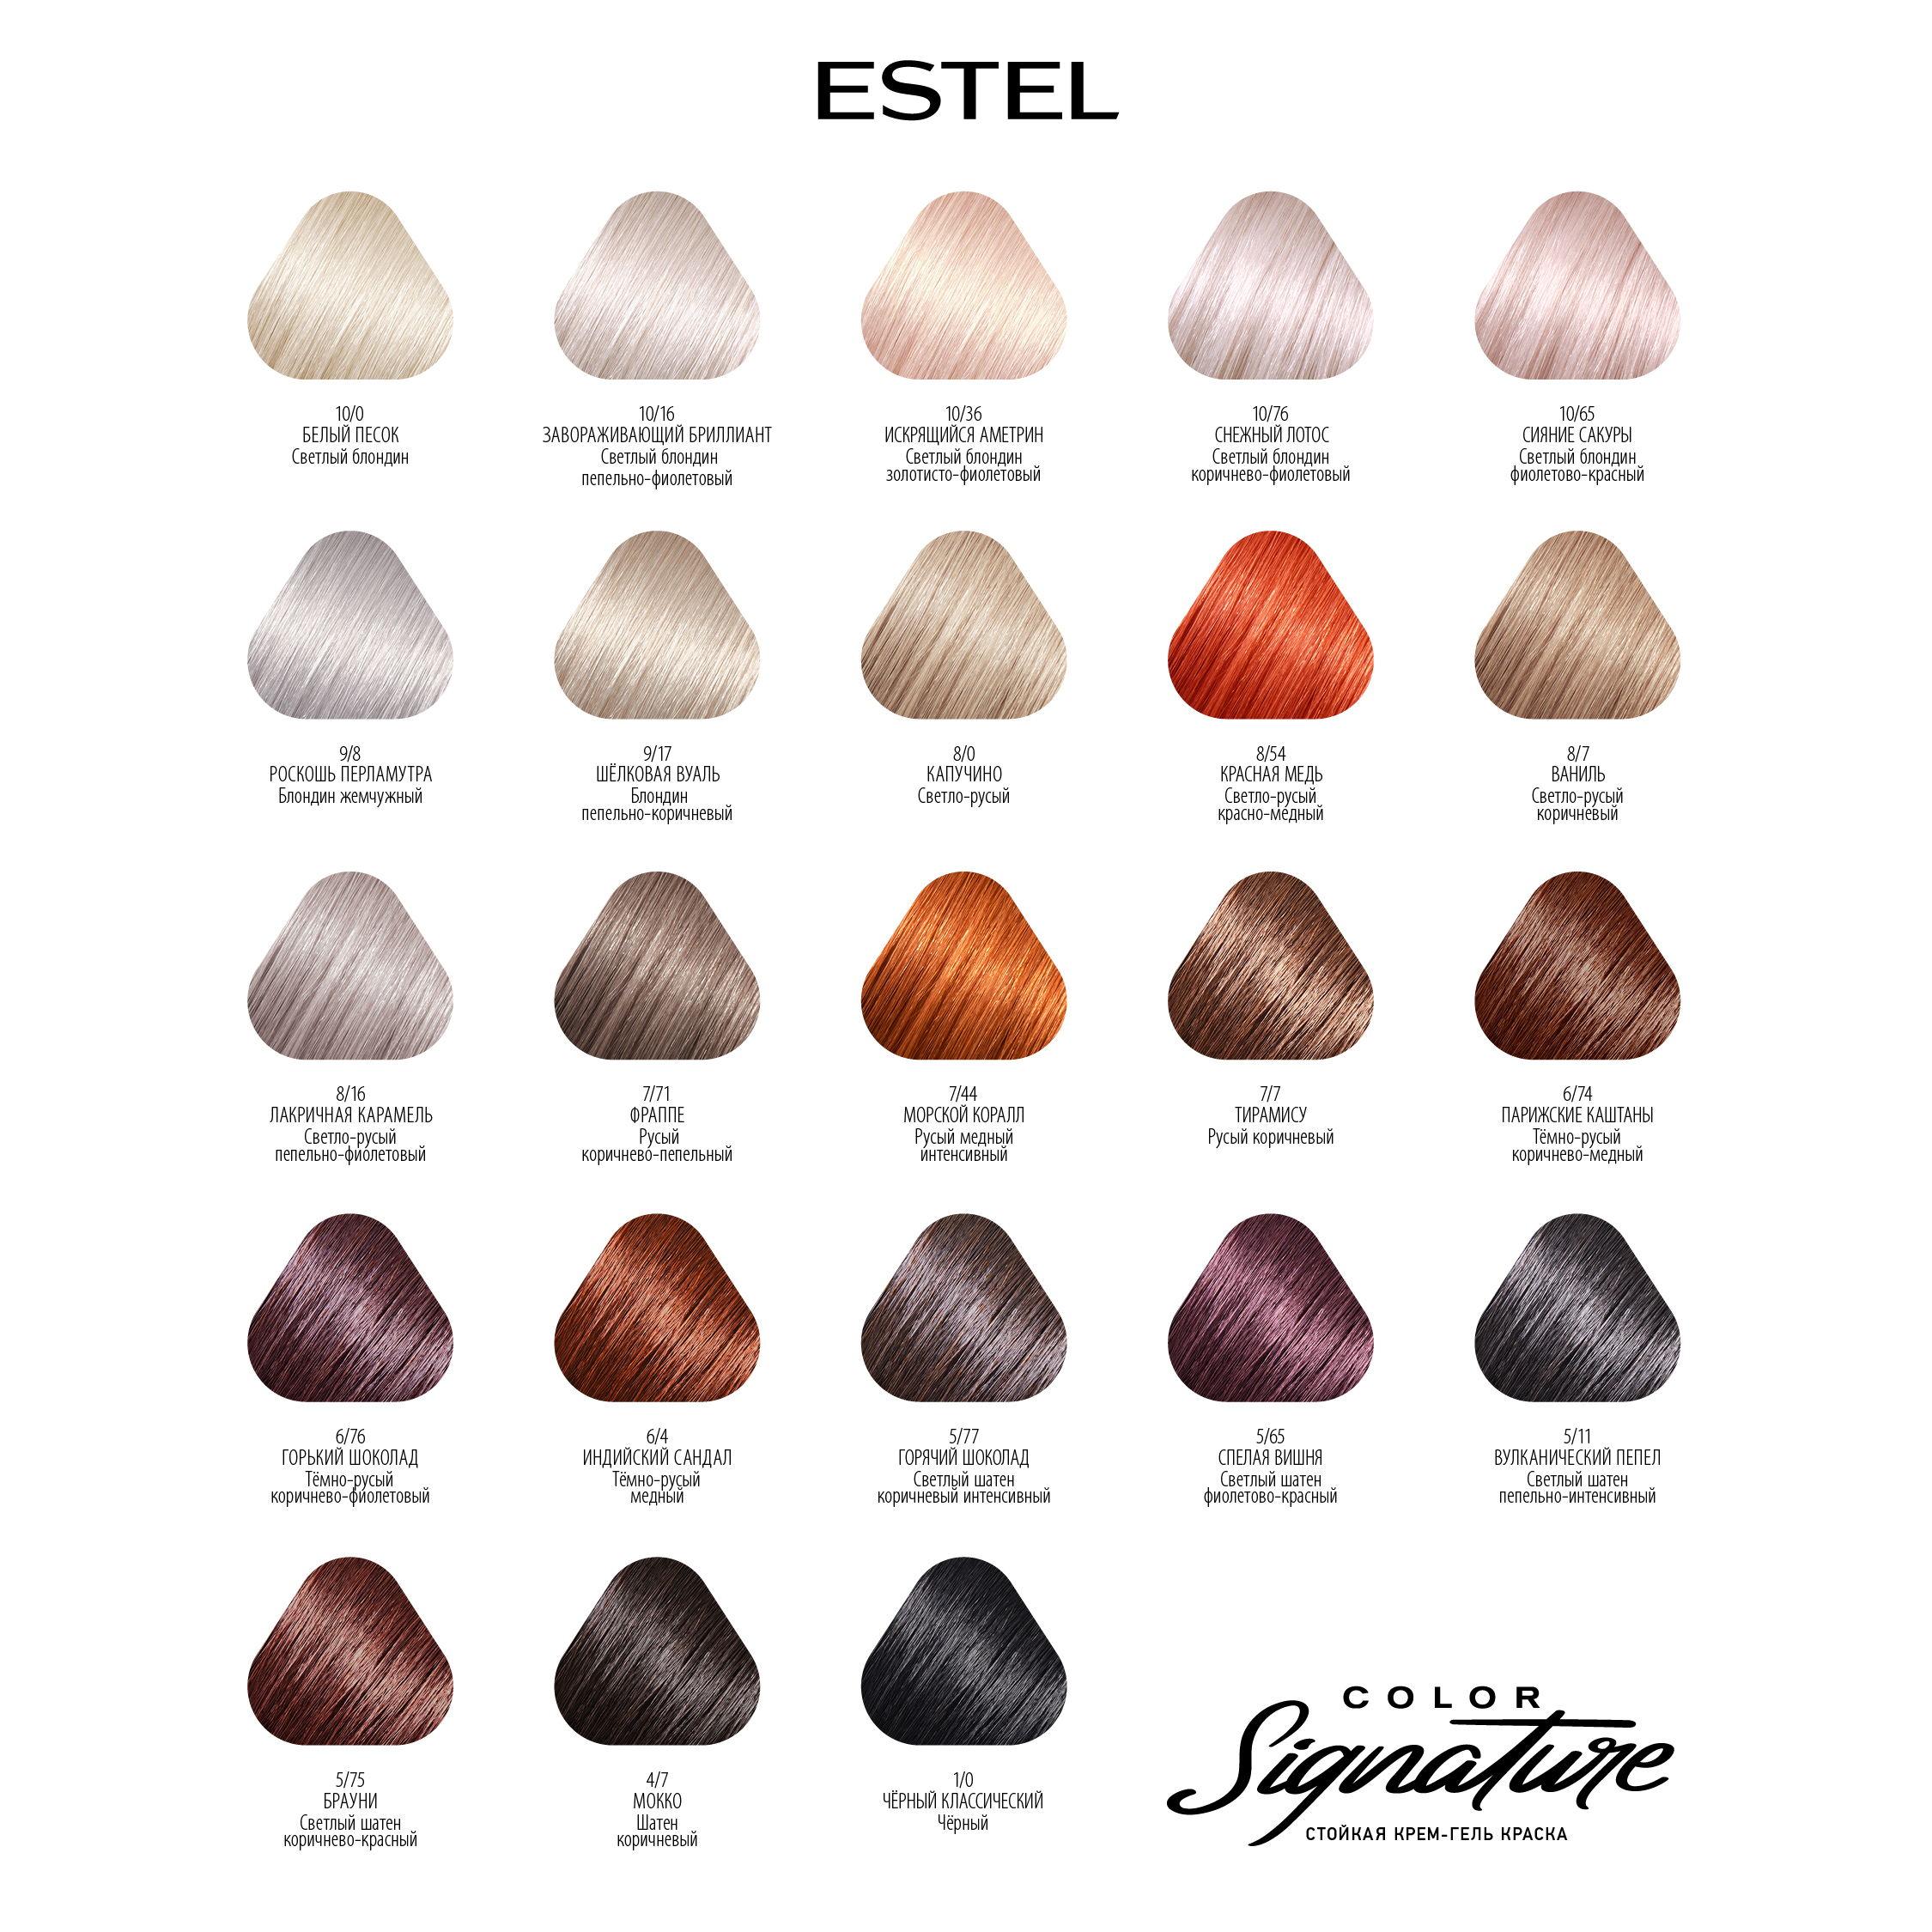 Краска для волос Estel Color Signature тон 6.74 парижские каштаны - в интернет-магазине TUT-BEAUTY.BY с доставкой.